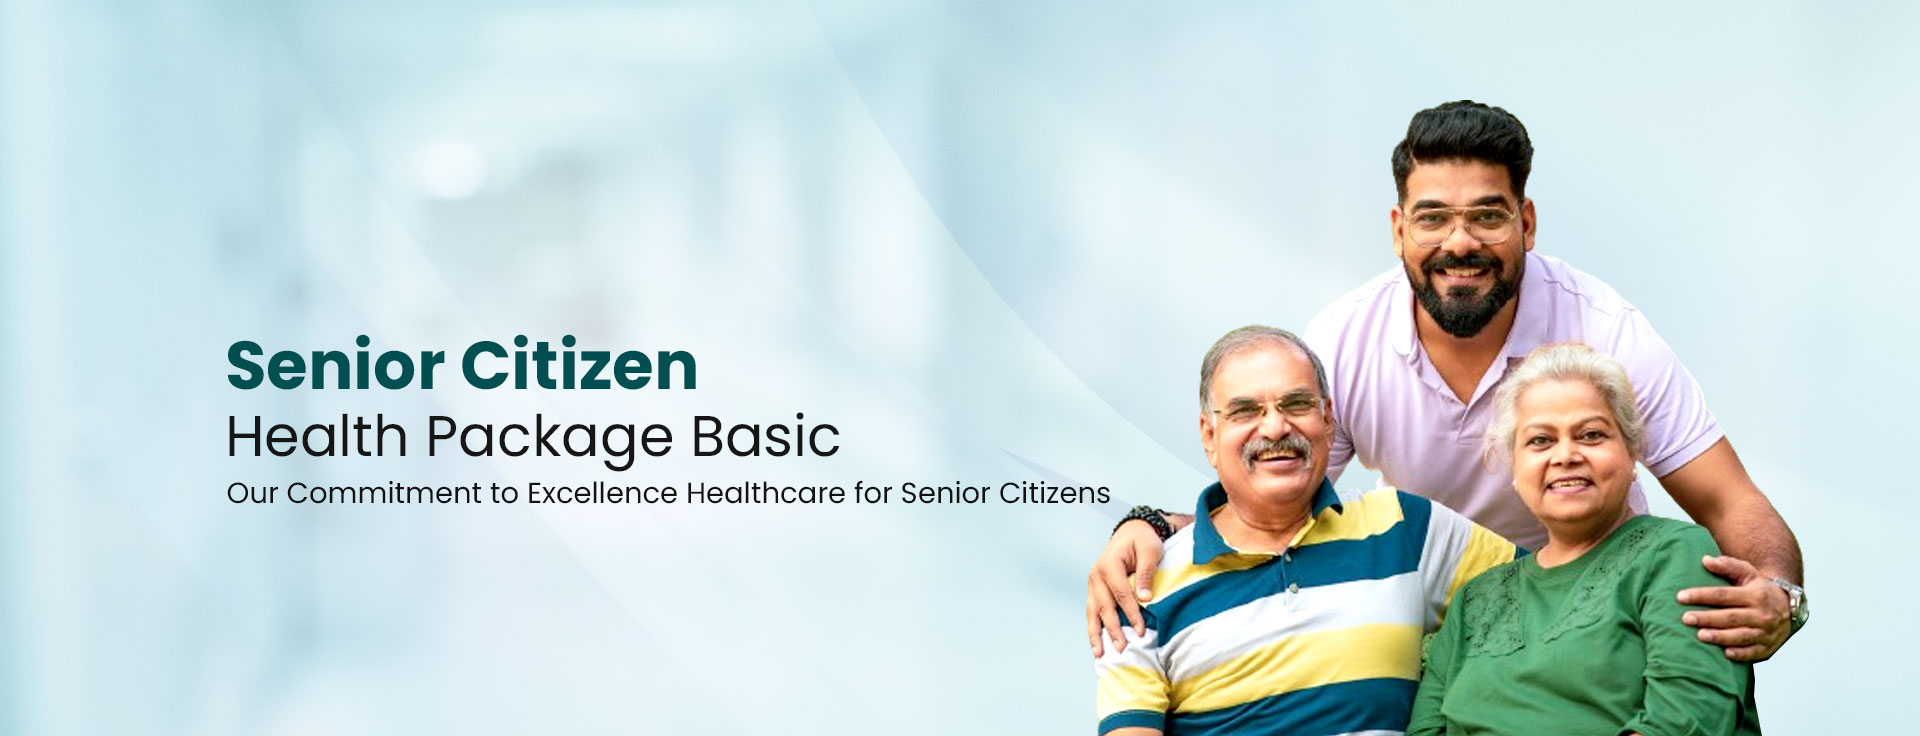 Senior Citizen Health Package - Basic